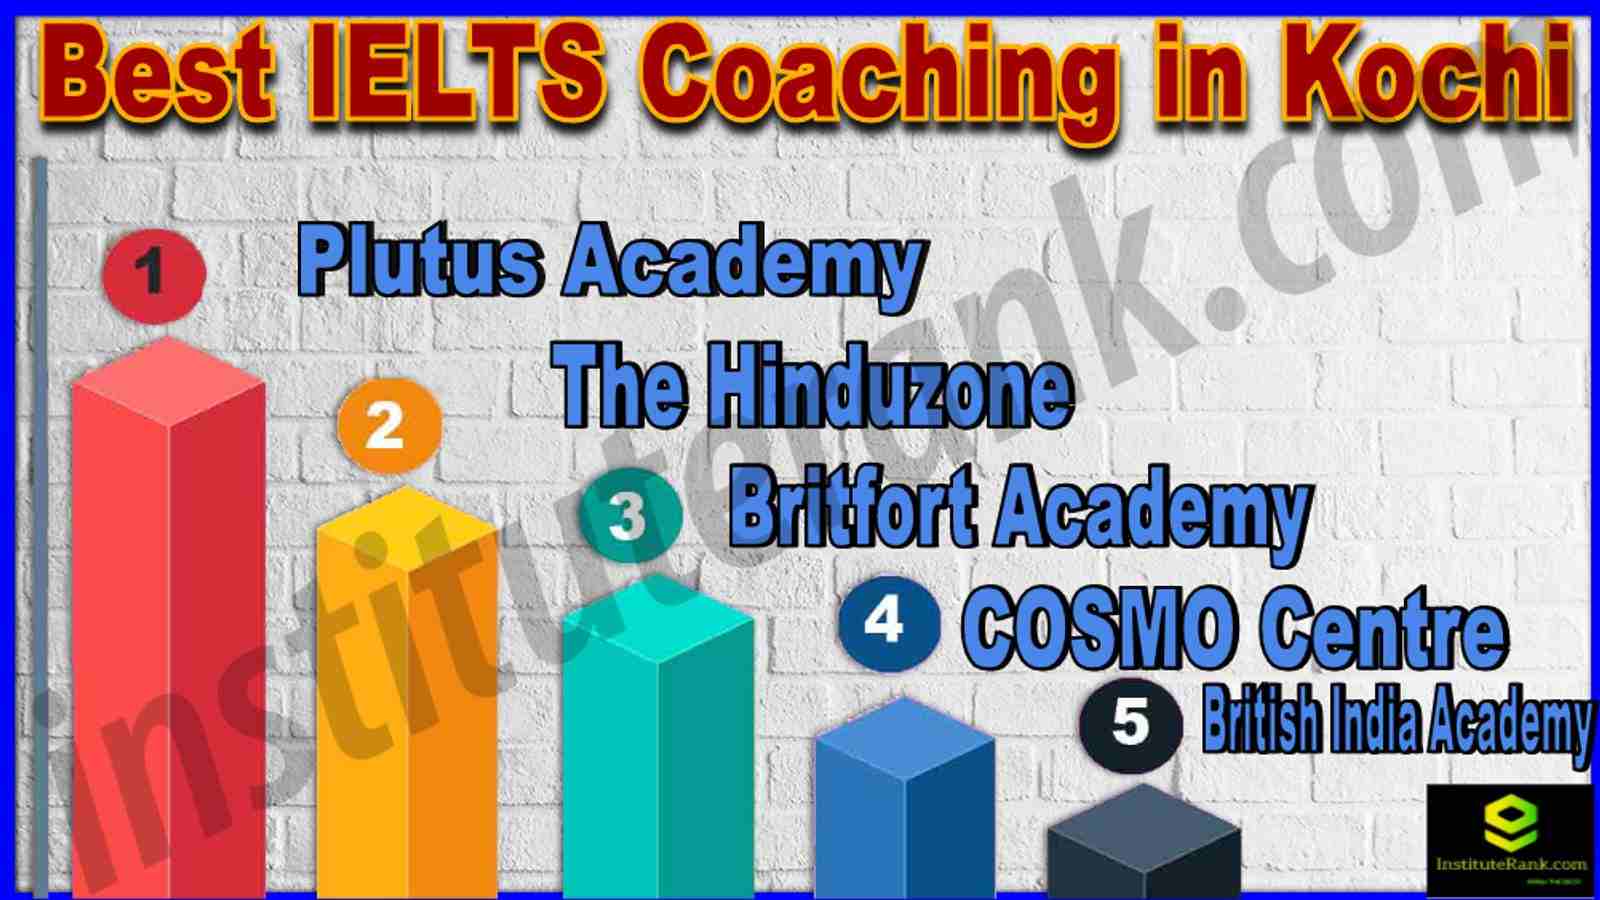 Best IELTS Coaching in Kochi